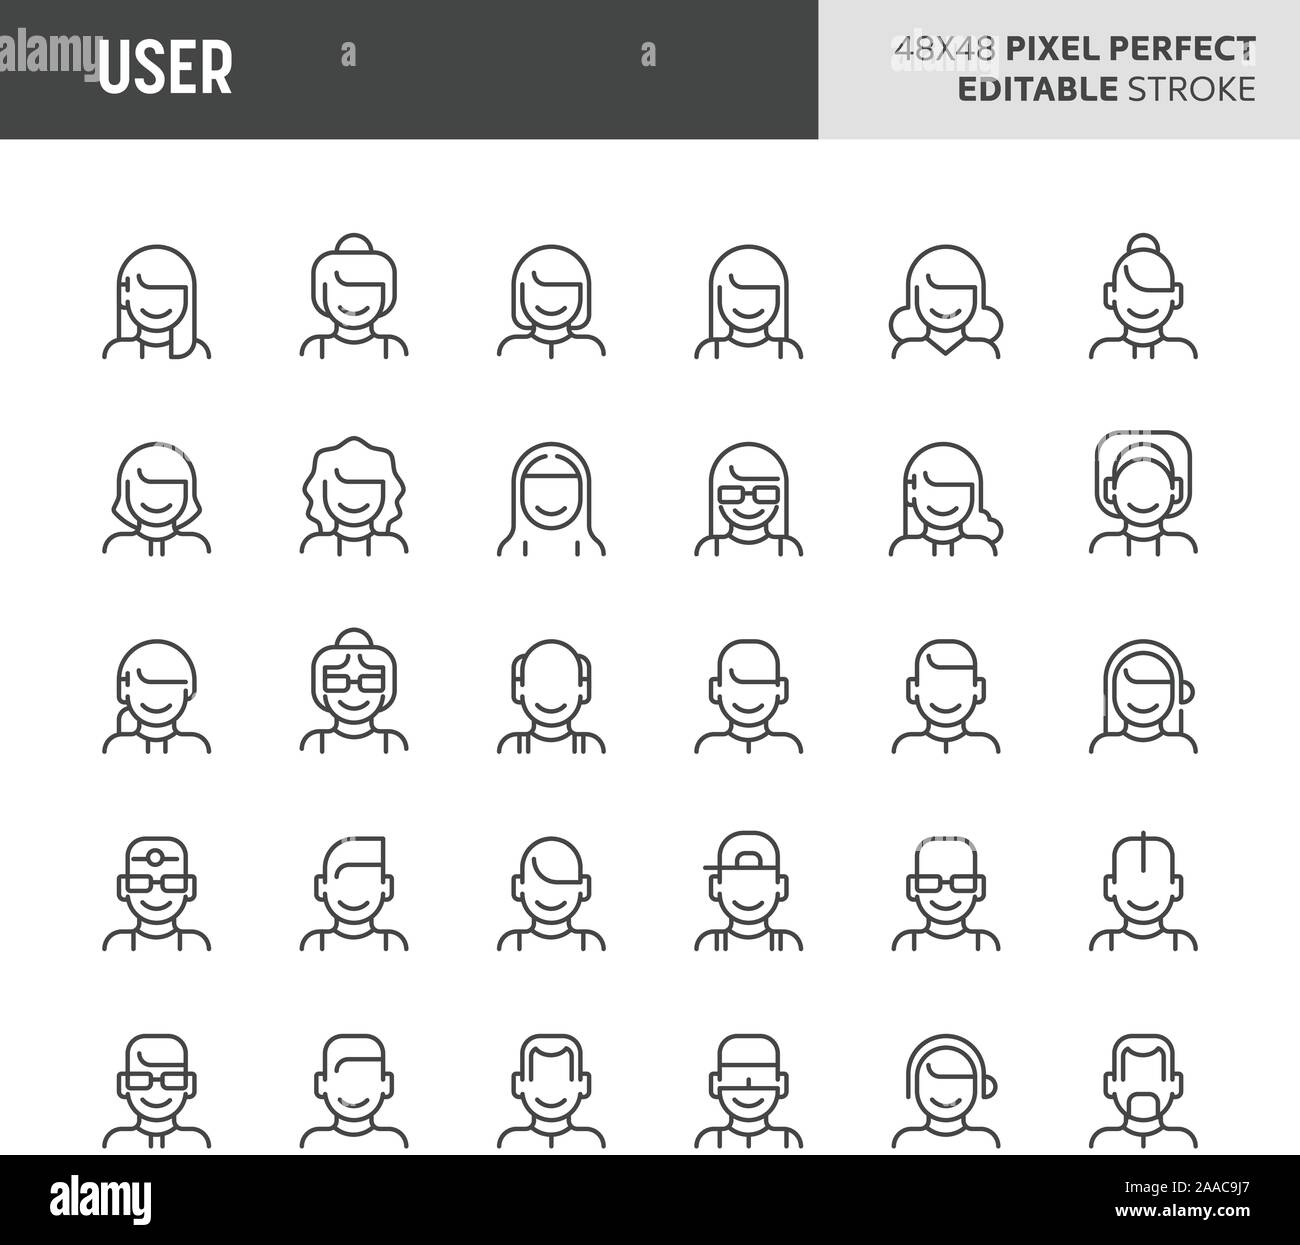 30 linea sottile icone associate a utenti e avatar con diversi tipi di facce e capelli di persone sono incluse in questa serie. 48x48 pixel vec perfetto Illustrazione Vettoriale